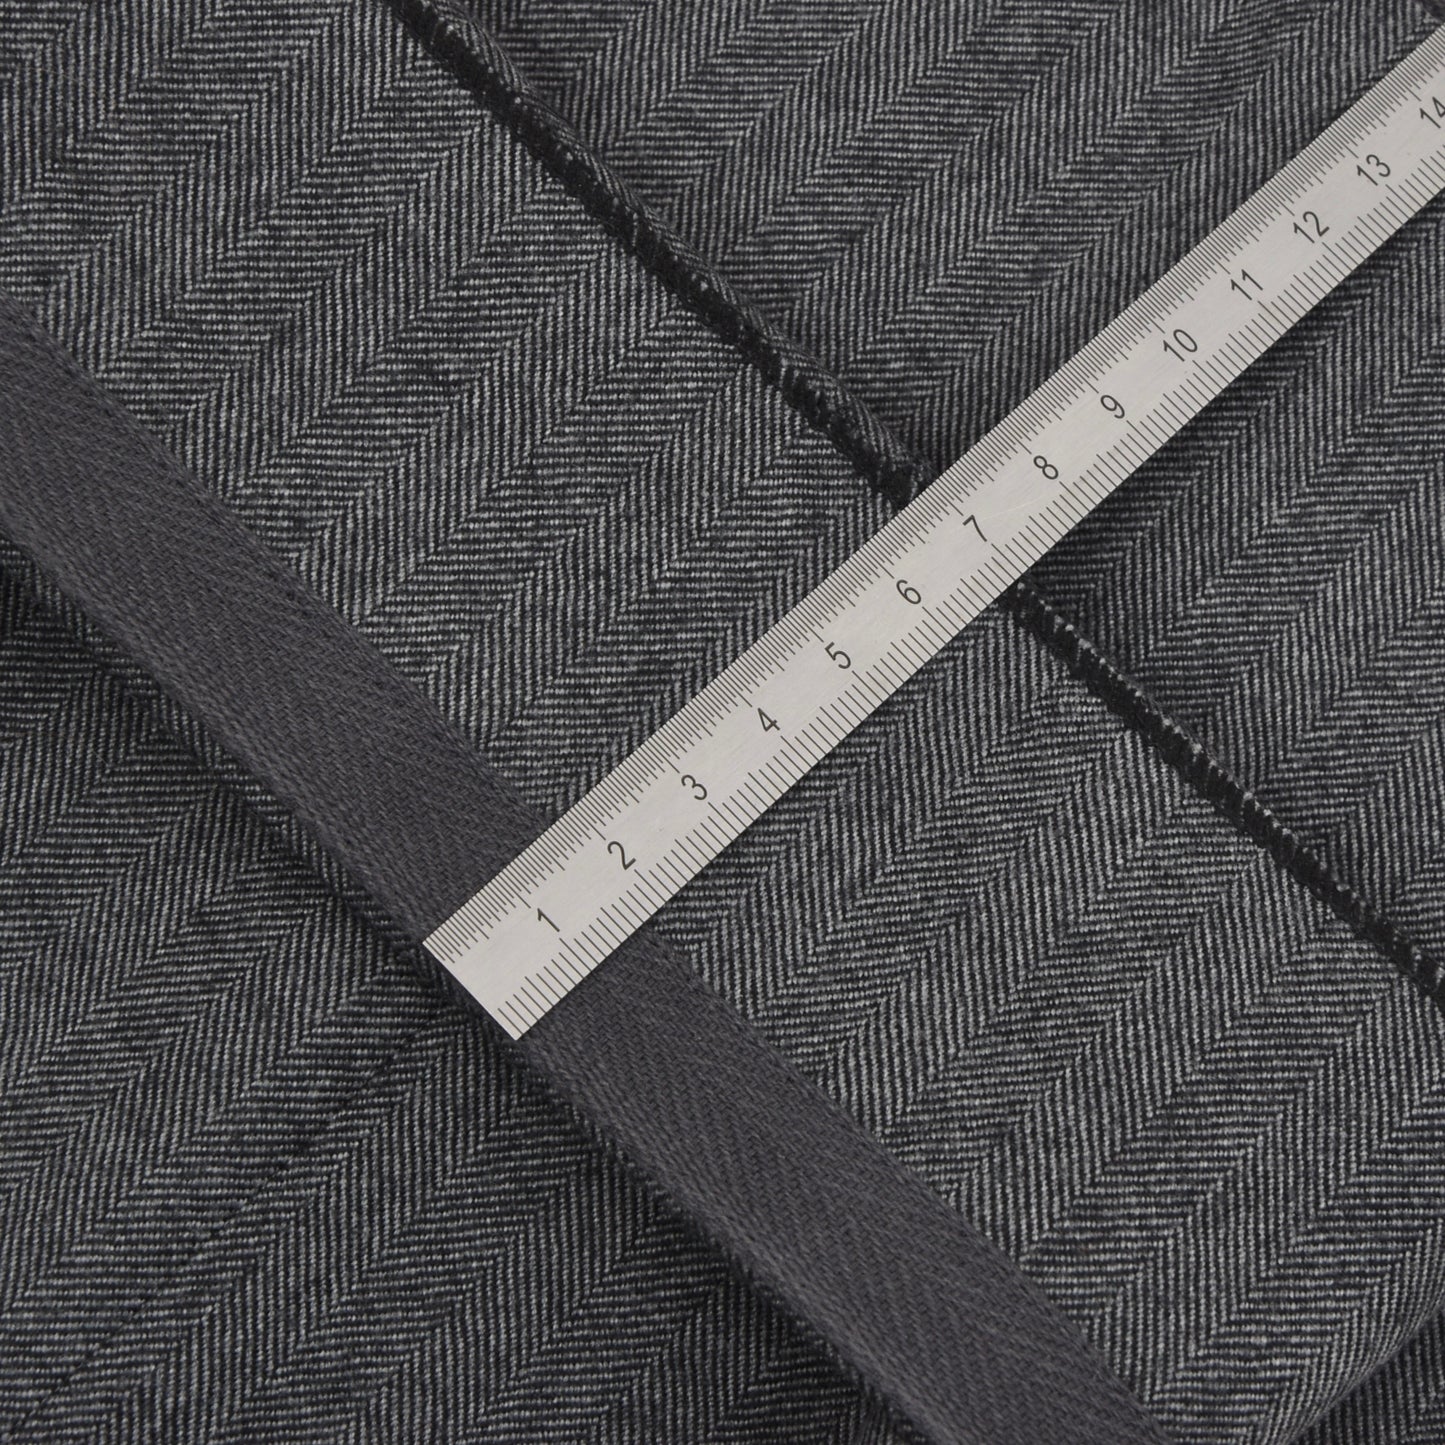 Ermenegildo Zegna Herringbone Wool Pants Size 56 - Grey